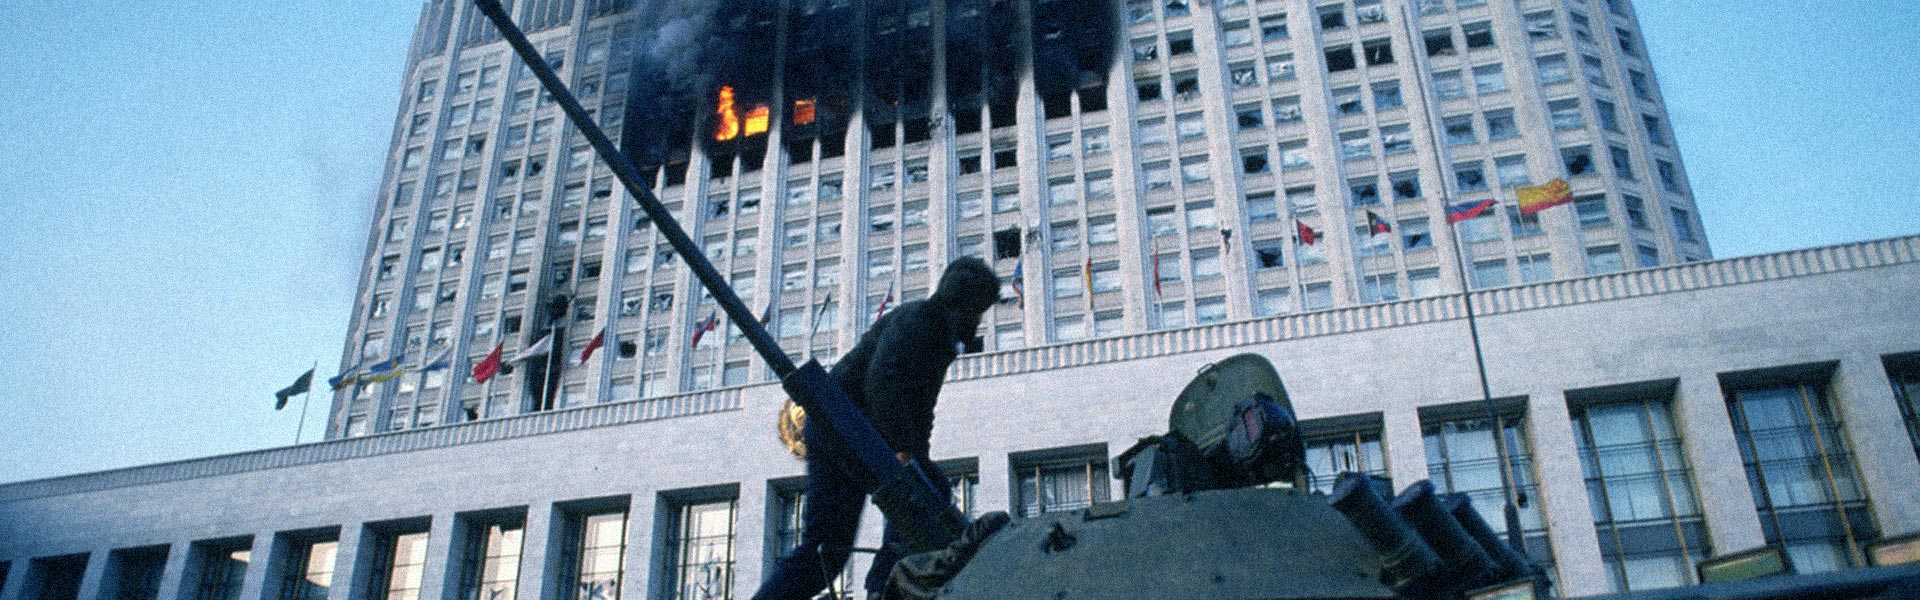 1993: Революция и двоевластие